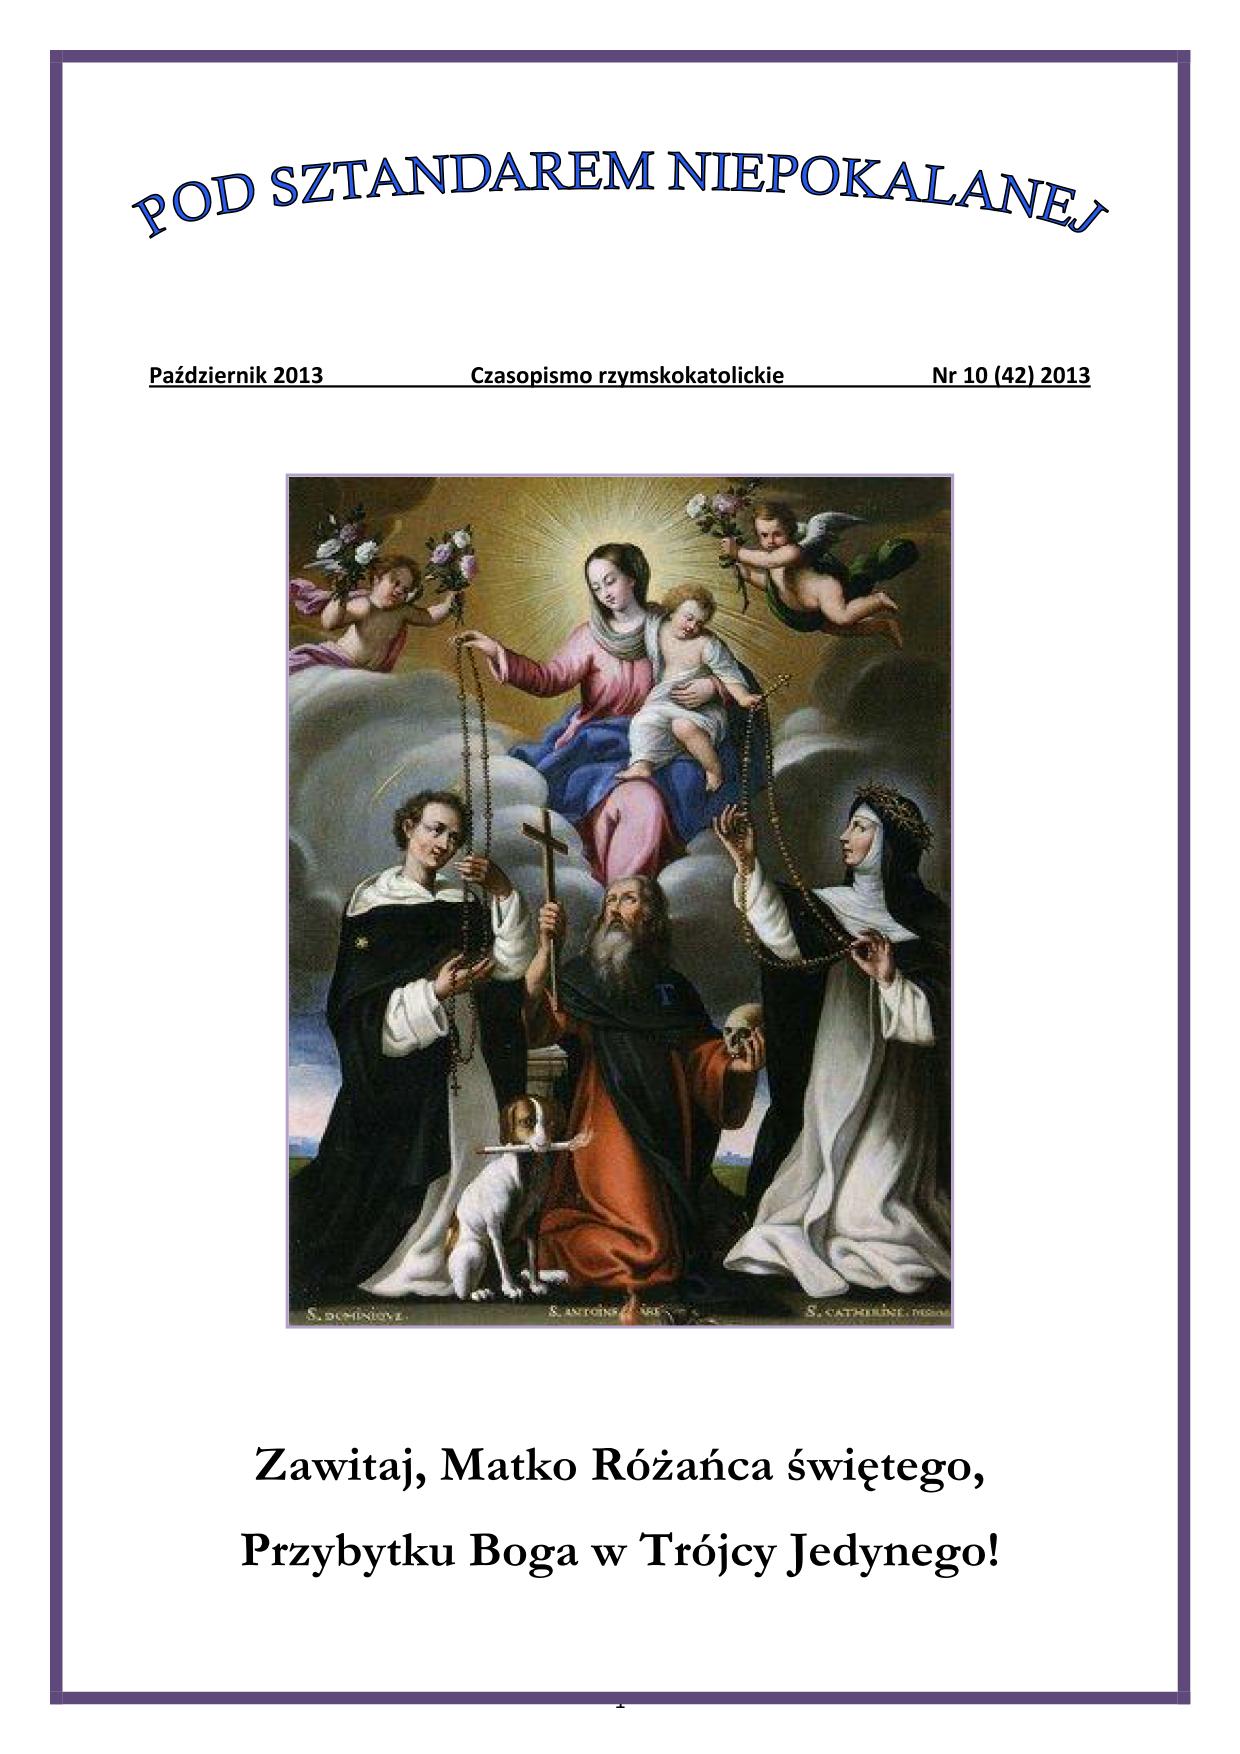 "Pod Sztandarem Niepokalanej". Nr 42. Październik 2013. Czasopismo rzymskokatolickie.